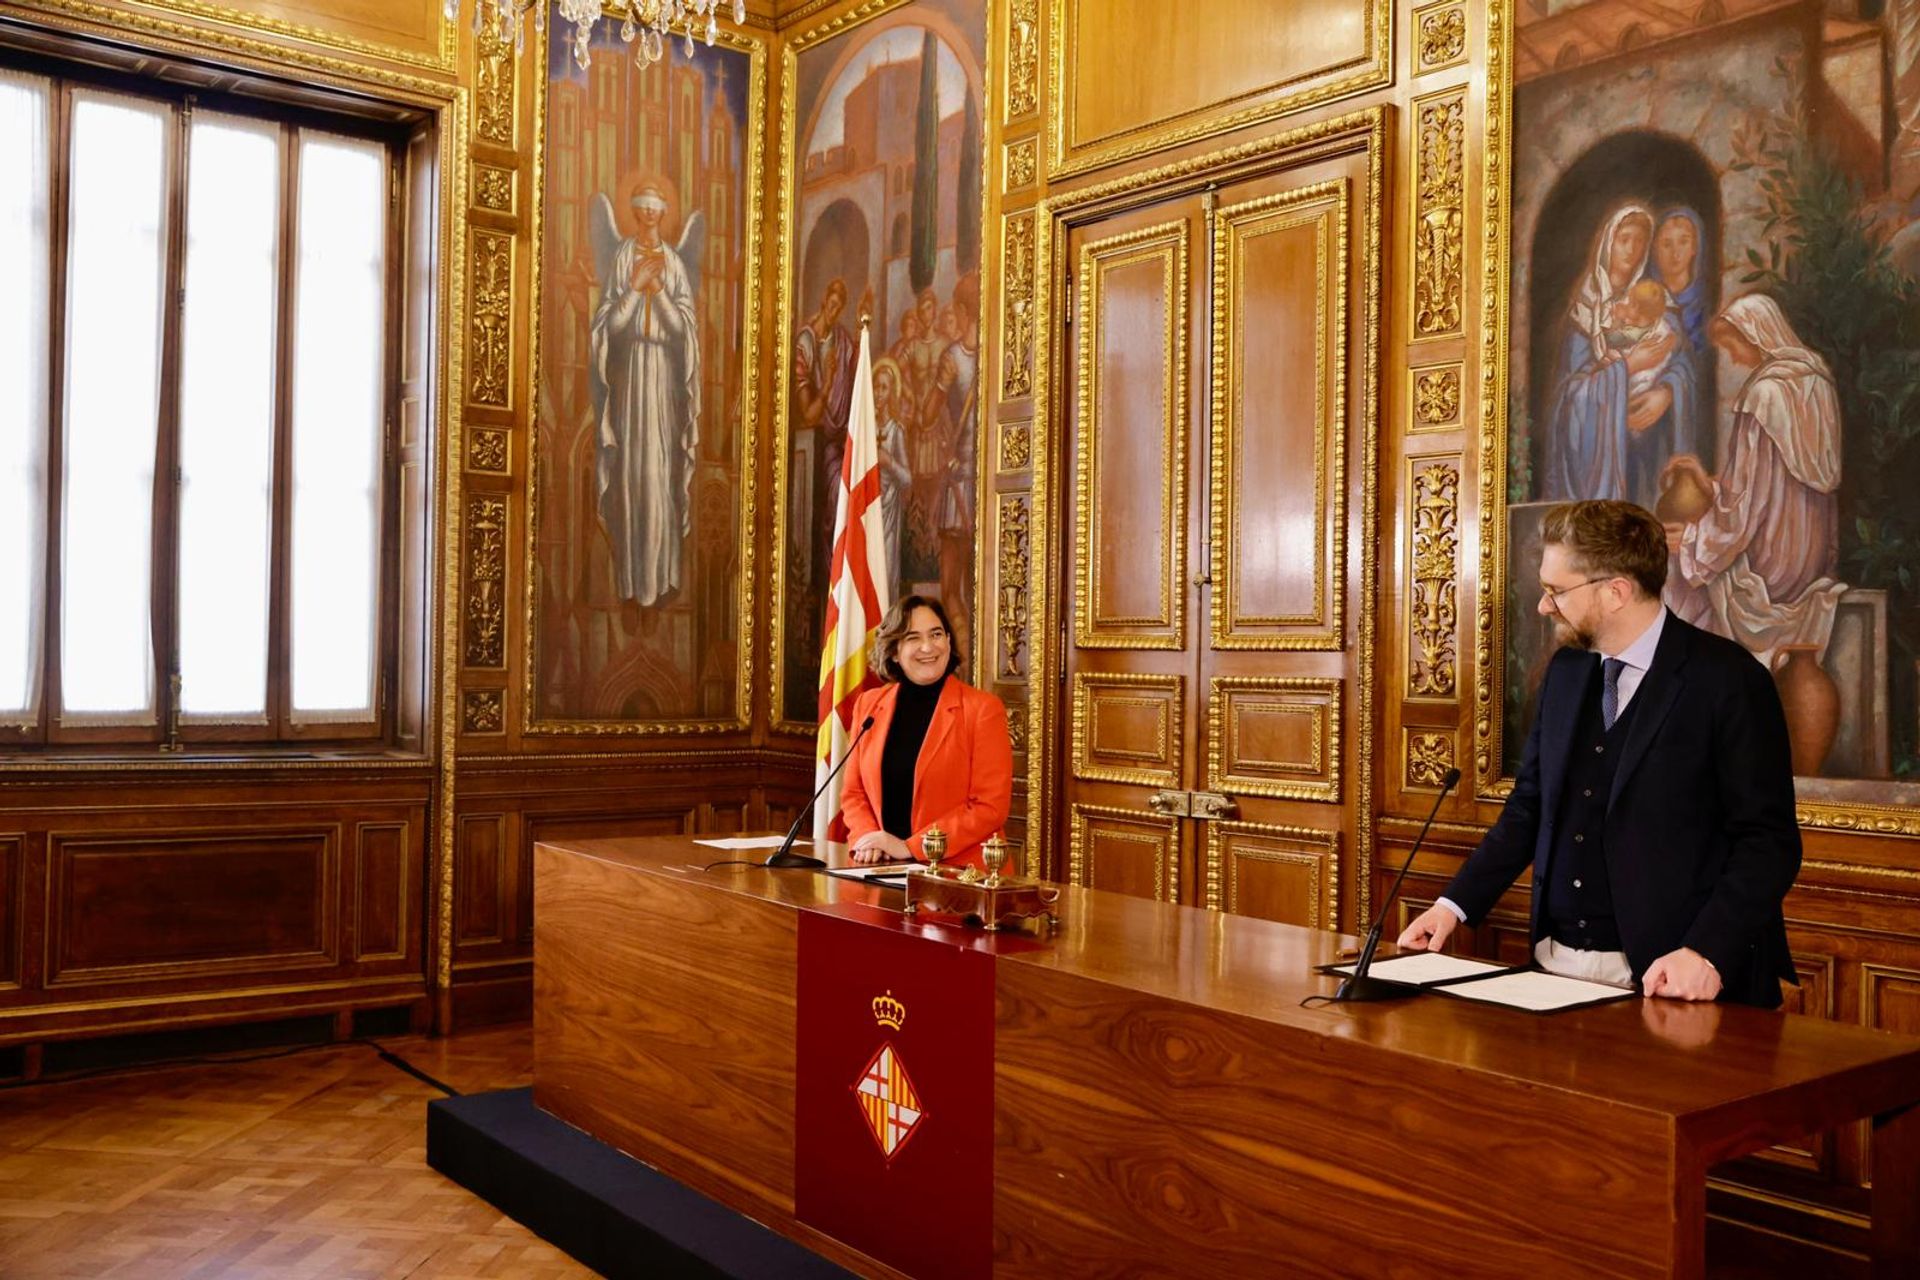 La firma dell’accordo di collaborazione fra il Comune di Bologna e l’Ajuntament de Barcelona, siglato ufficialmente dai Sindaci delle due grandi città europee Matteo Lepore e Ada Colau